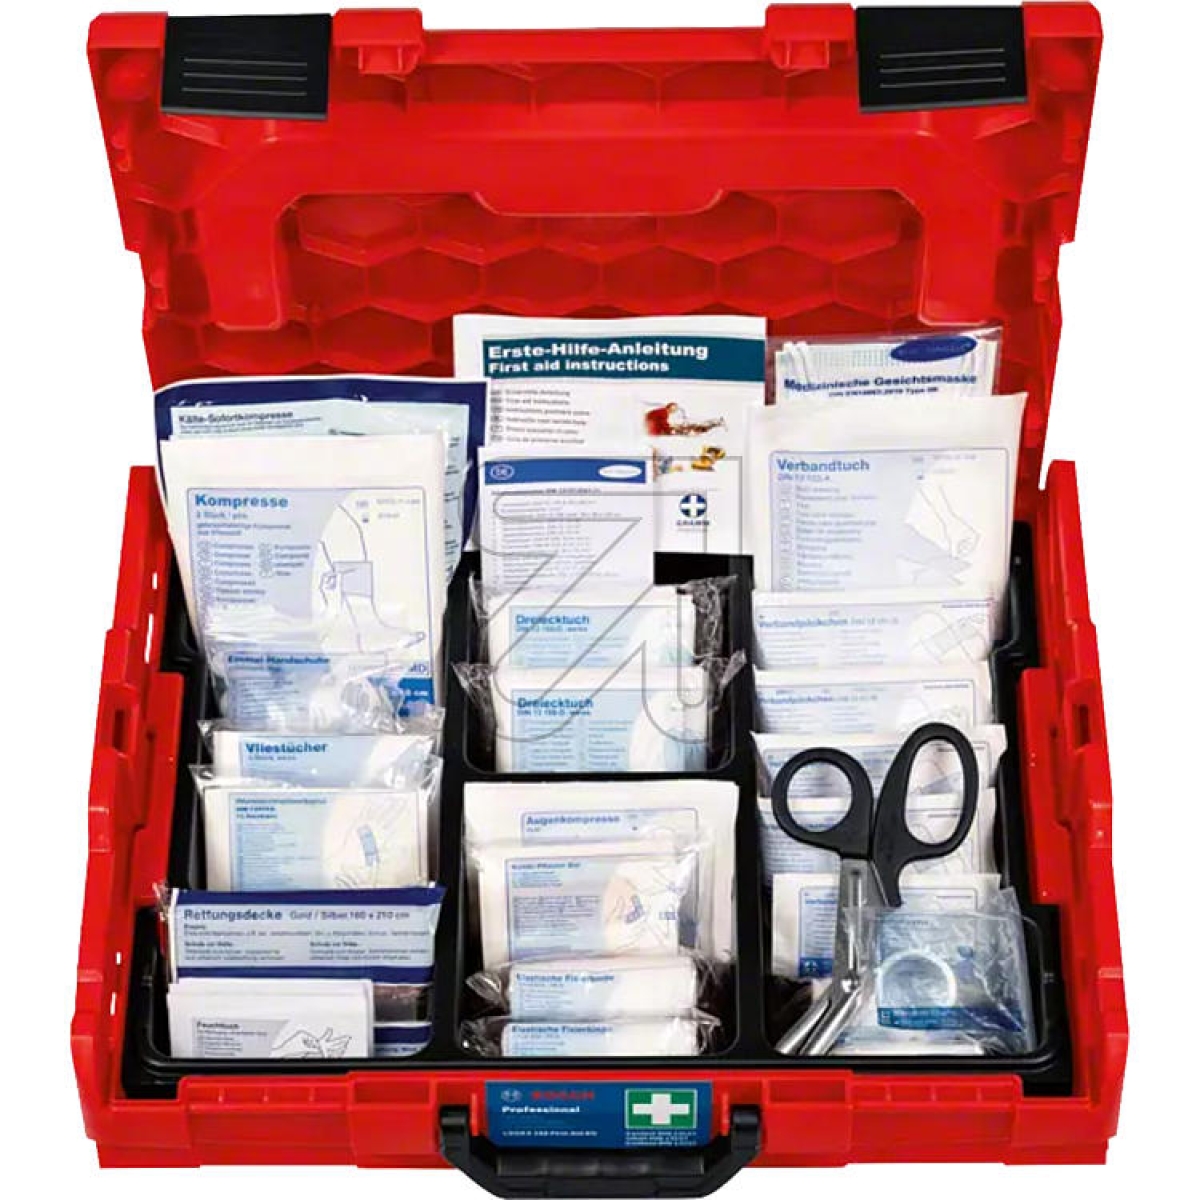 BoschL-BOXX 102 first aid set 1600A02X2RArticle-No: 770400